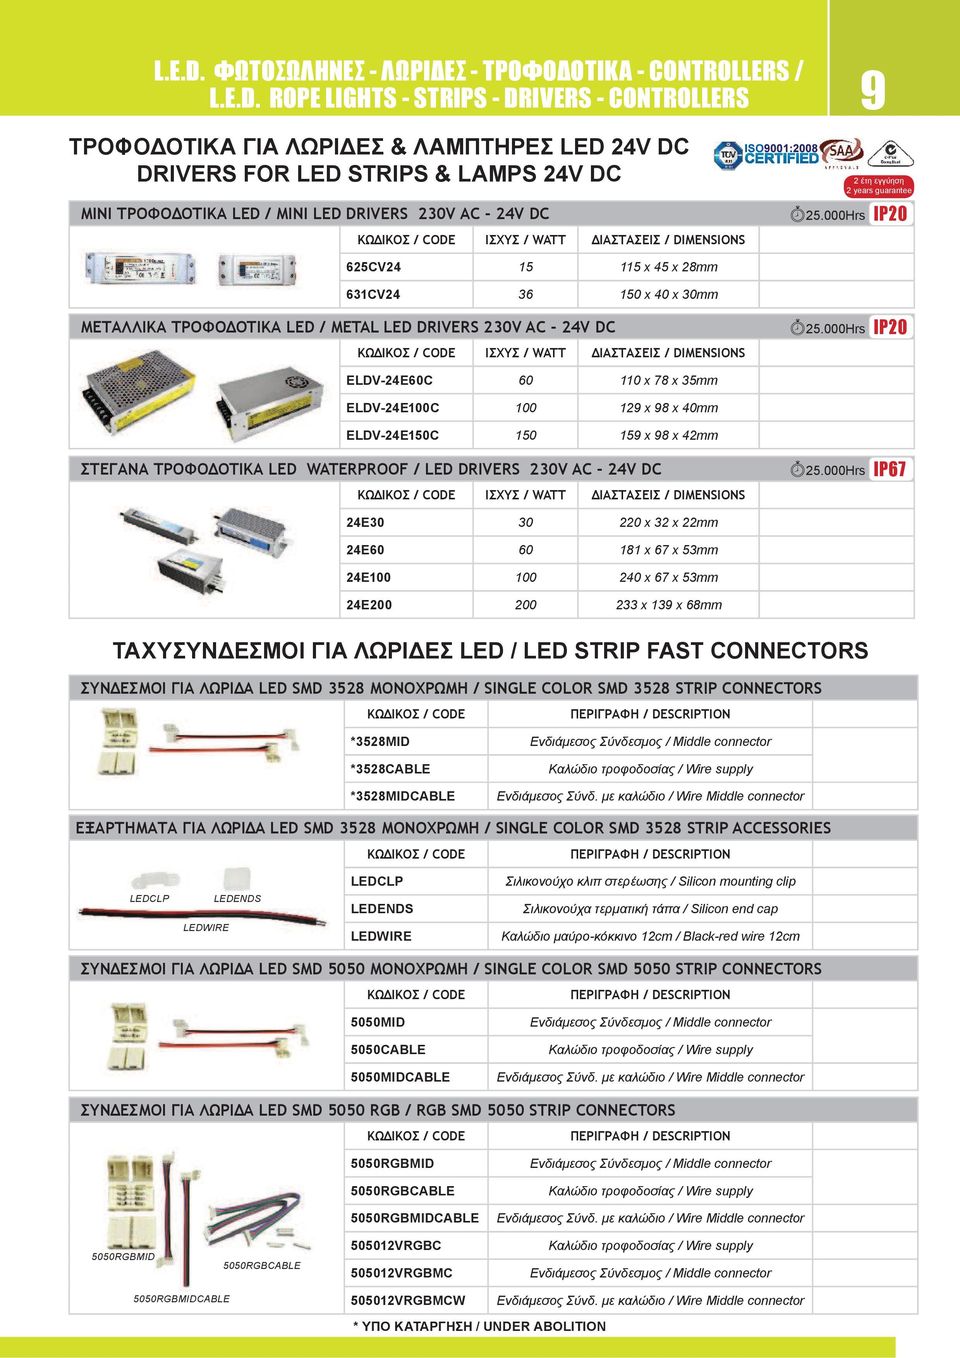 ΛΩΡΙΔΕΣ LED / LED STRIP FAST CONNECTORS *3528MID *3528CABLE *3528MIDCABLE Ενδιάμεσος Σύνδεσμος / Middle connector Καλώδιο τροφοδοσίας / Wire supply Ενδιάμεσος Σύνδ.